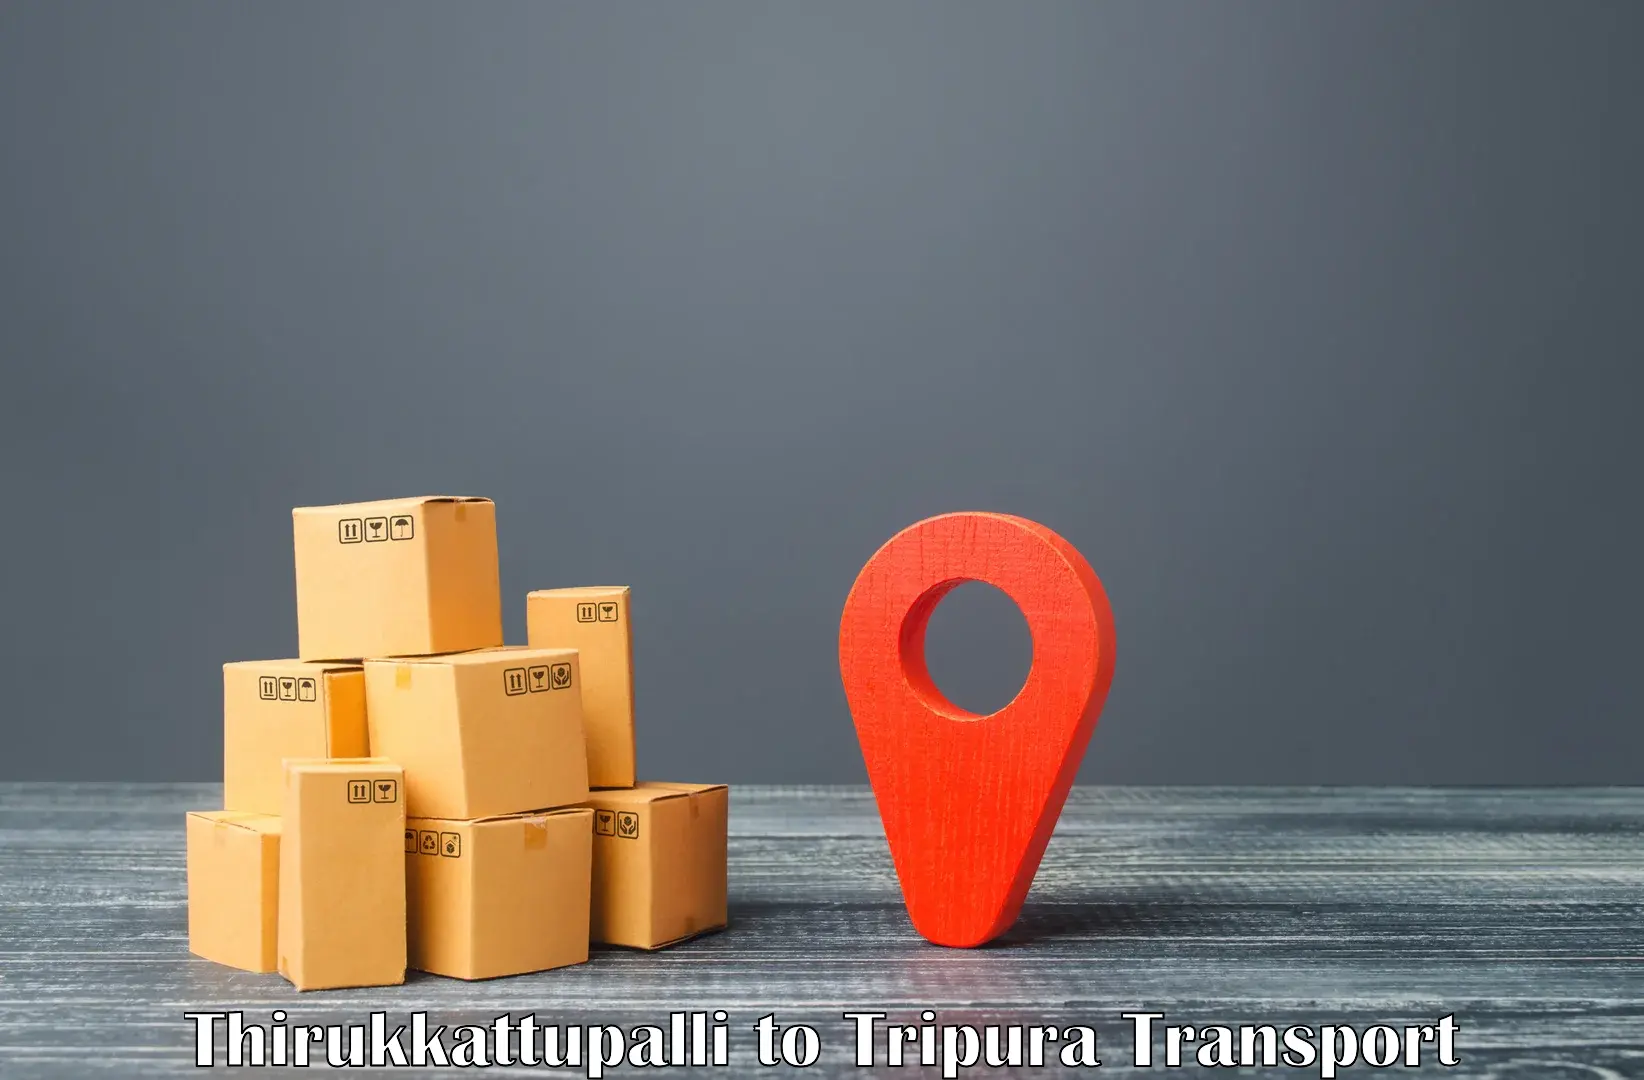 Furniture transport service Thirukkattupalli to Kamalpur